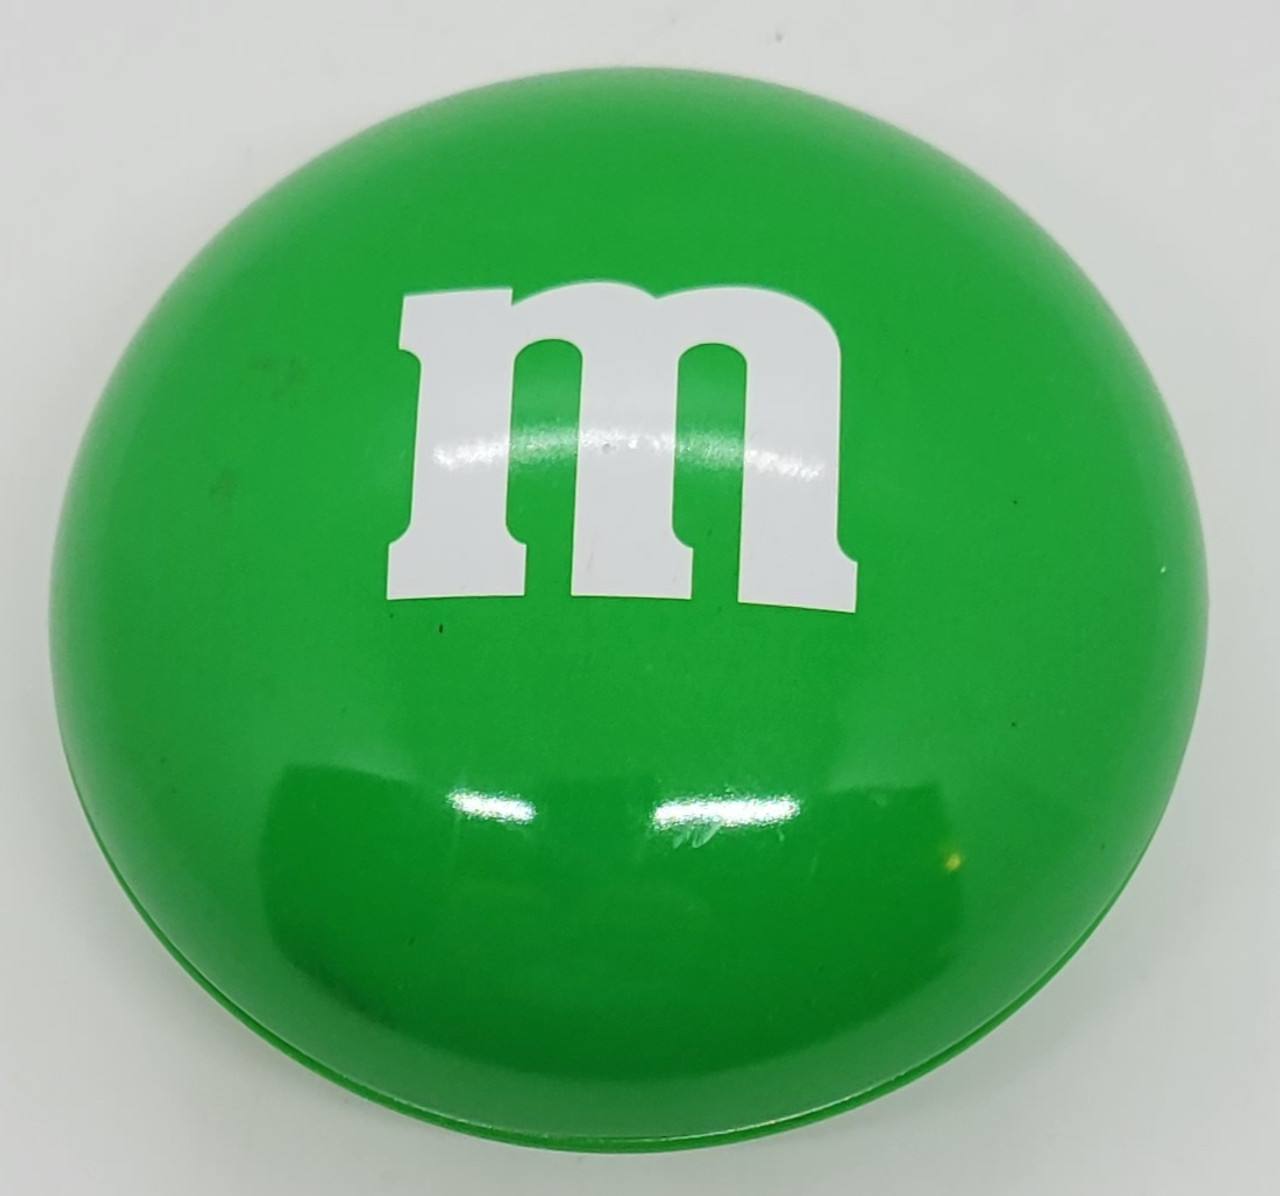 Green M&M